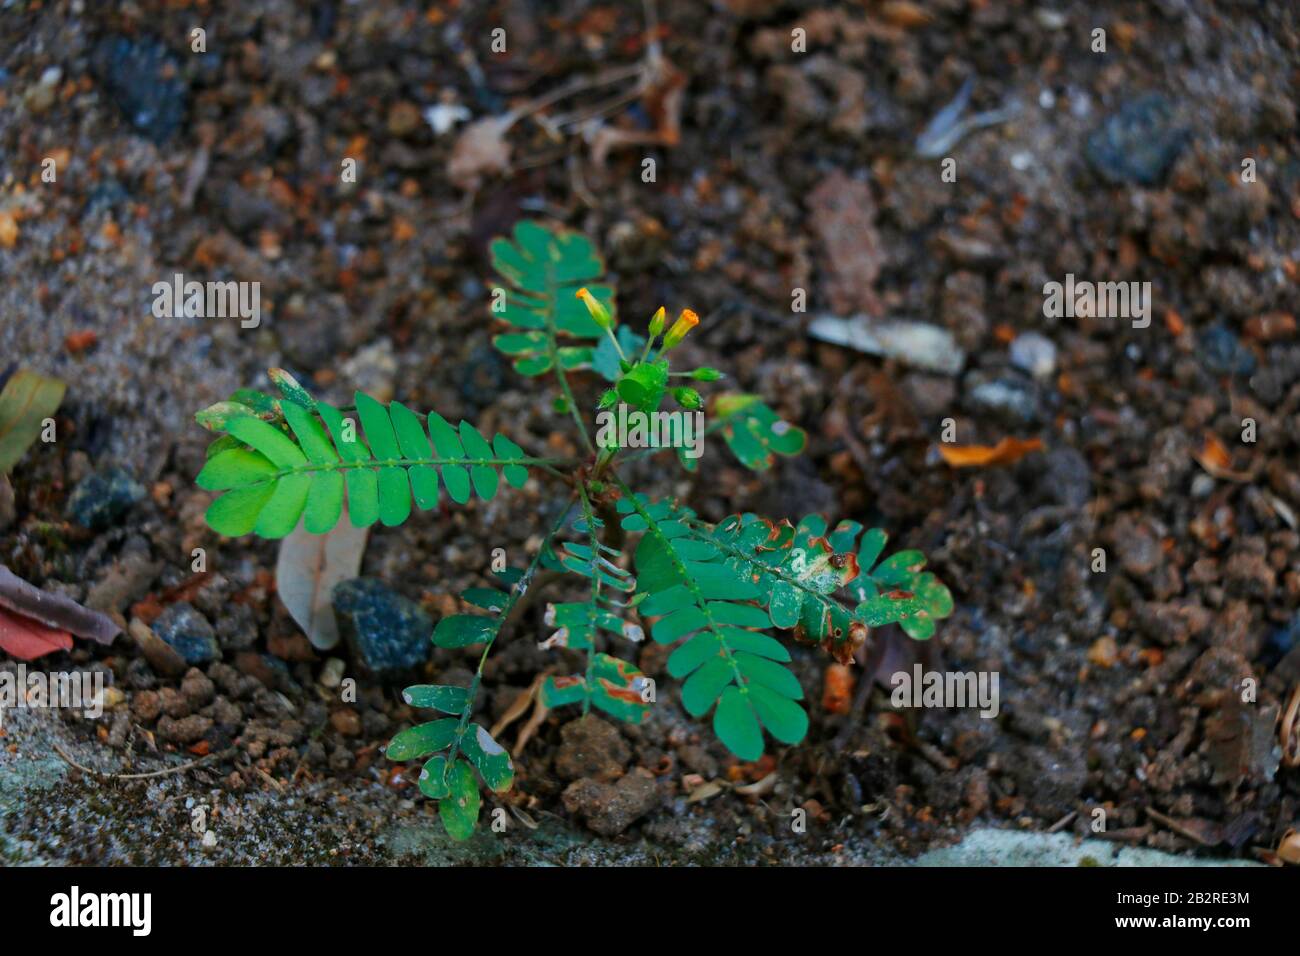 Le biophytum sensitivum, également connu sous le nom de plante de petit arbre, est une espèce de plante du genre Biophytum de la famille des oxalidaceae. Banque D'Images